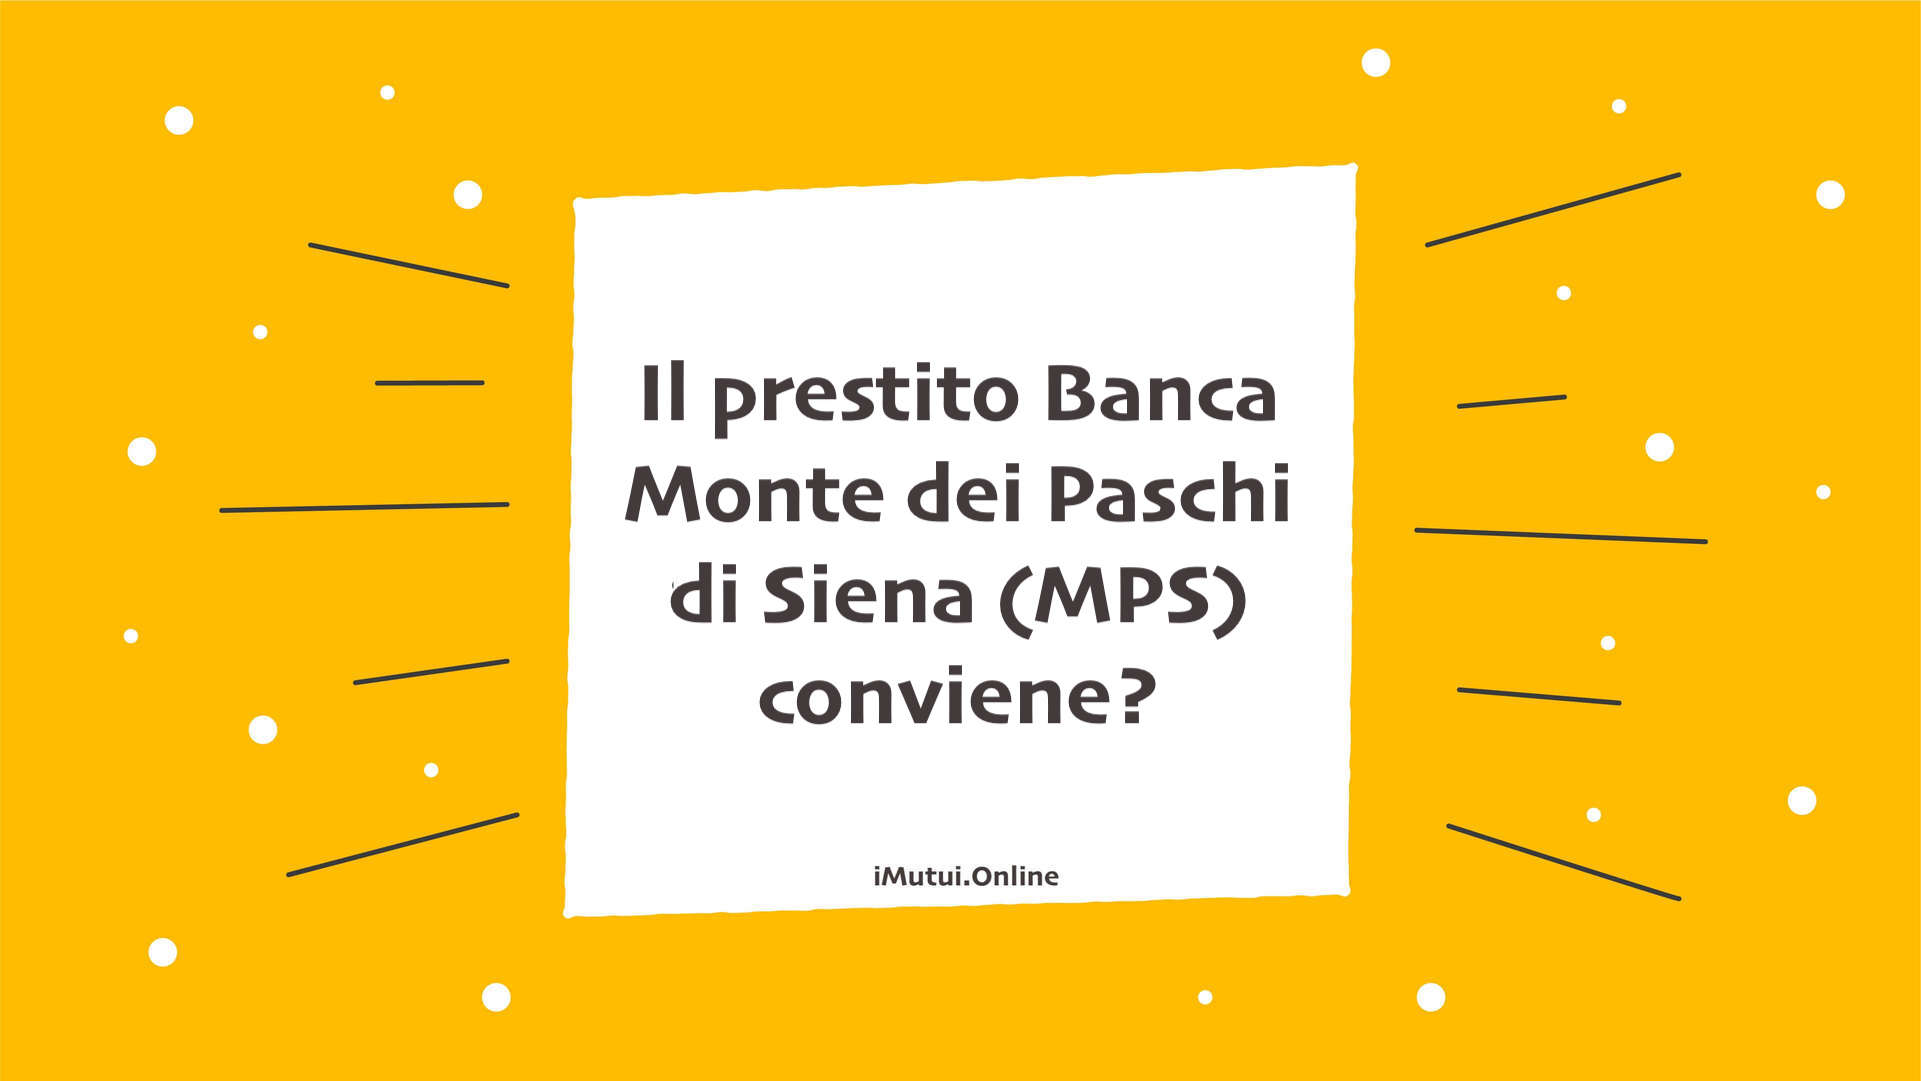 Il prestito Banca Monte dei Paschi di Siena (MPS) conviene?